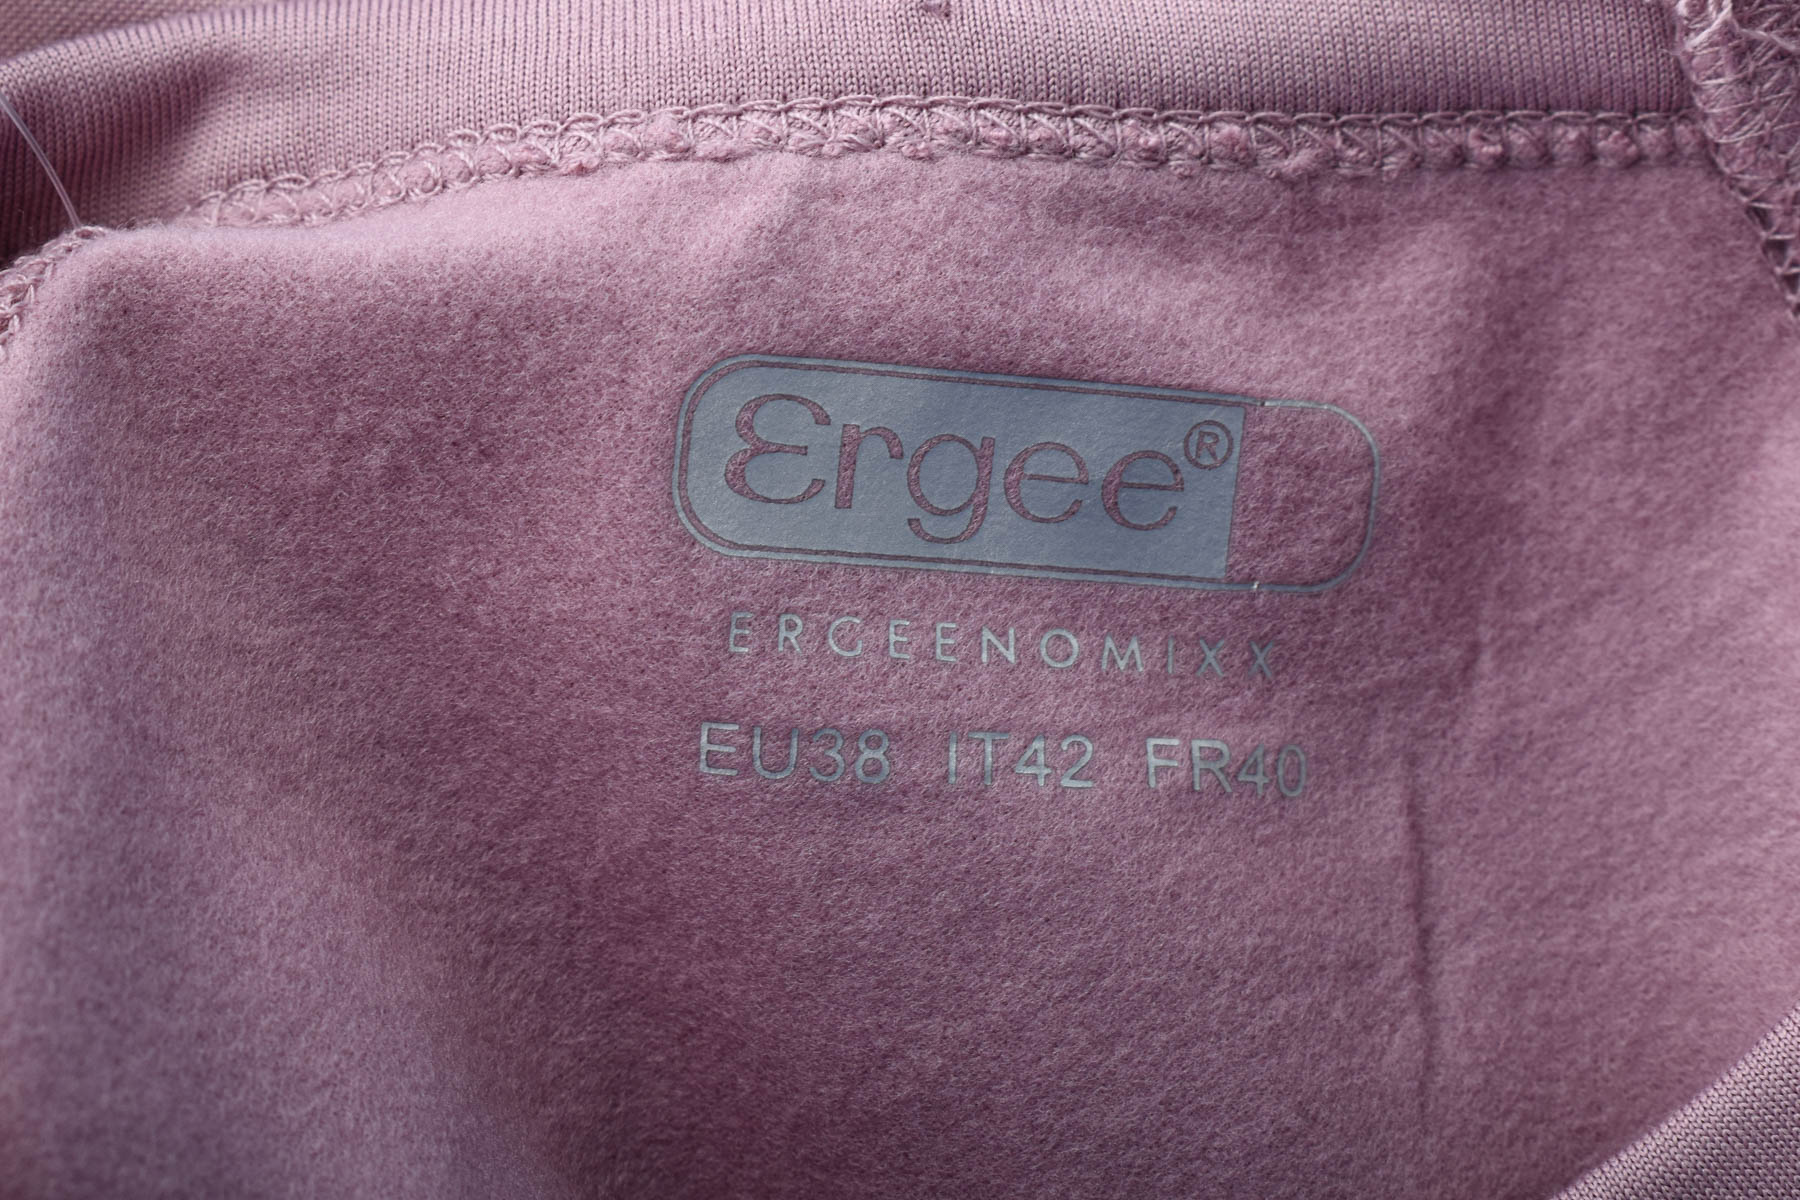 Γυναικεία μπλούζα - Ergee - 2